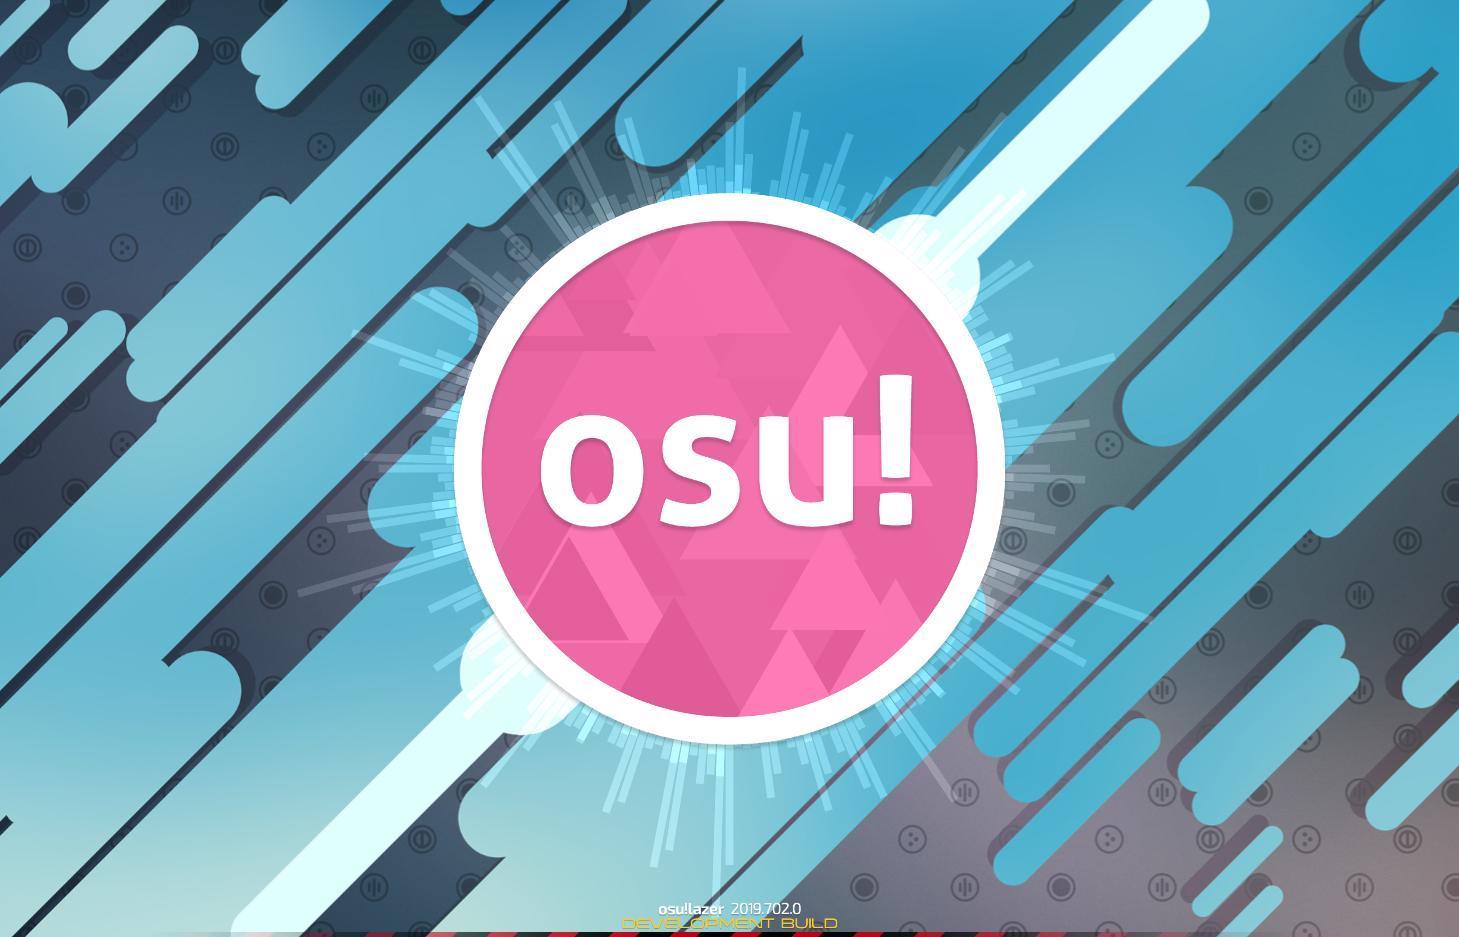 Screenshot 1 of ओसु! 2019.704.0